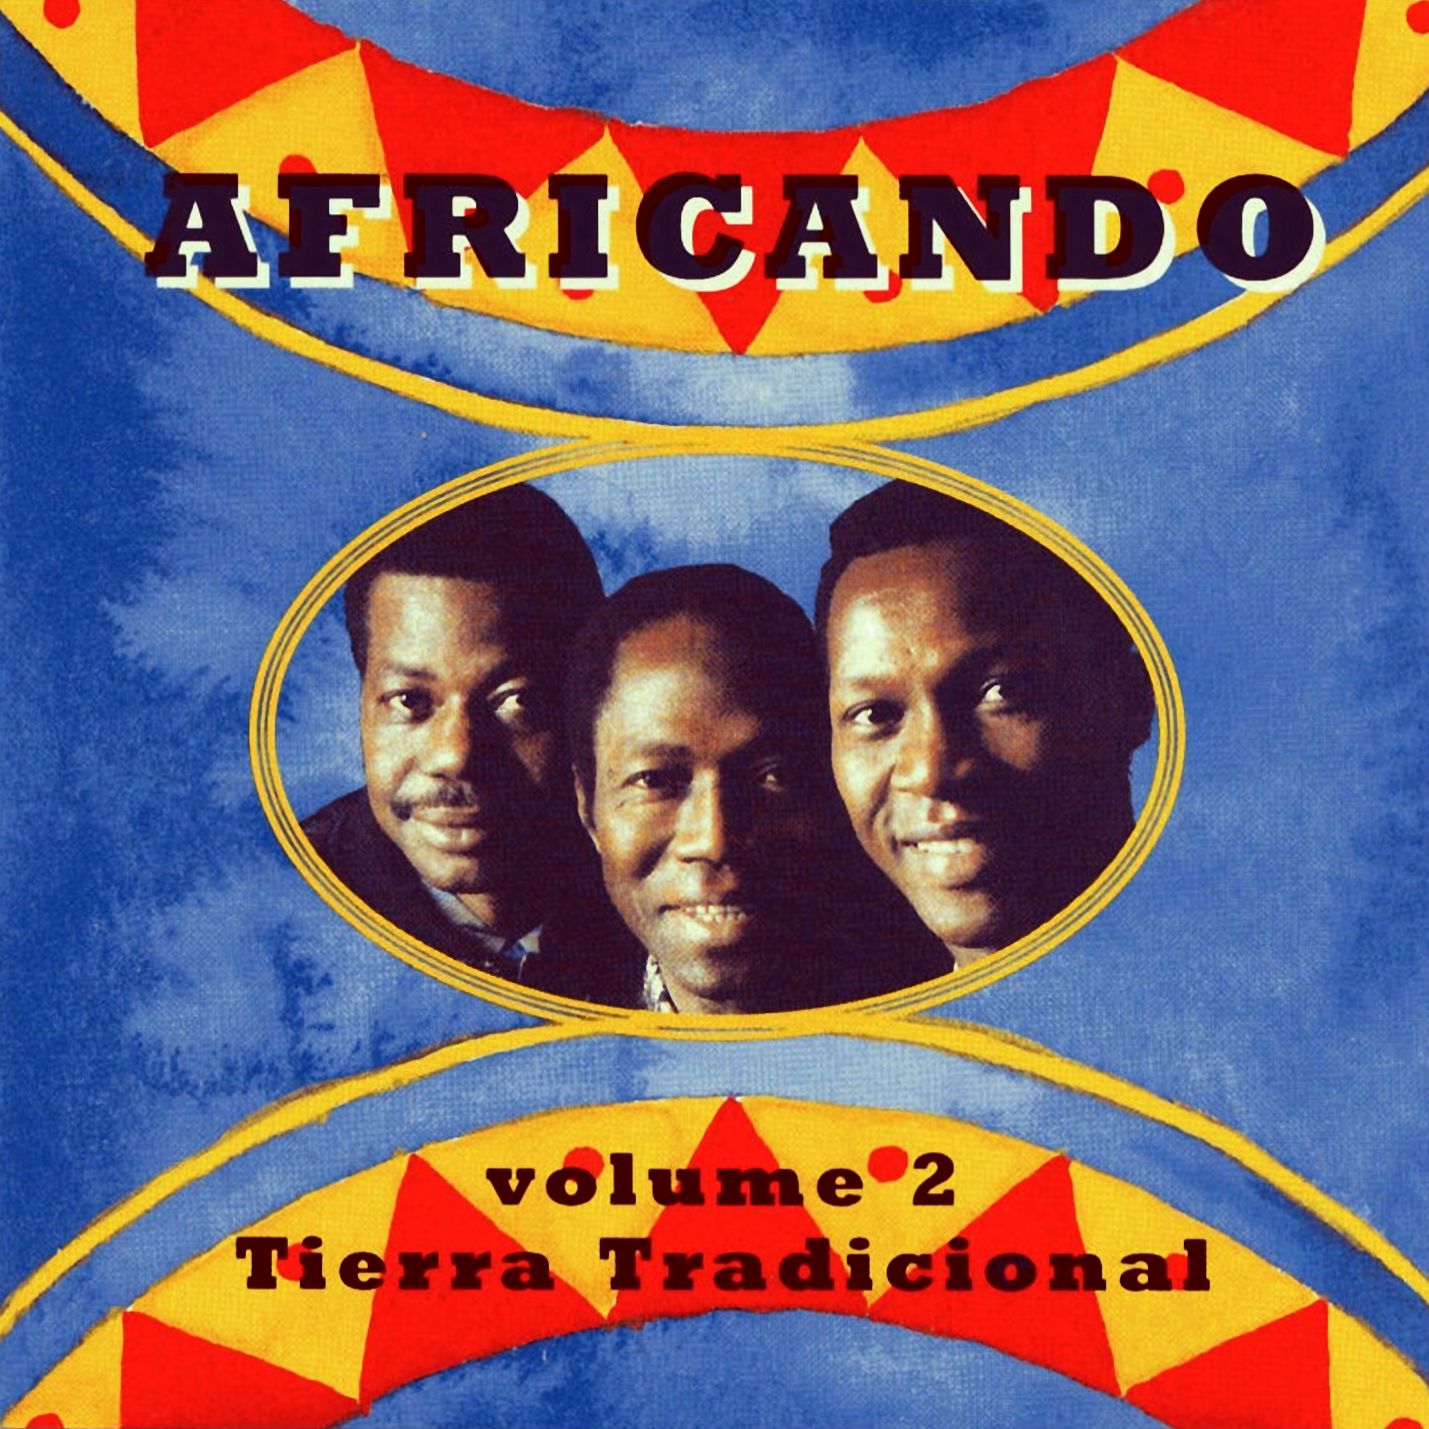 Africando - Volume 2 (Tierra Tradicional) (1994) Africando+-+Vol.2+Tierra+Tradicional+-+front